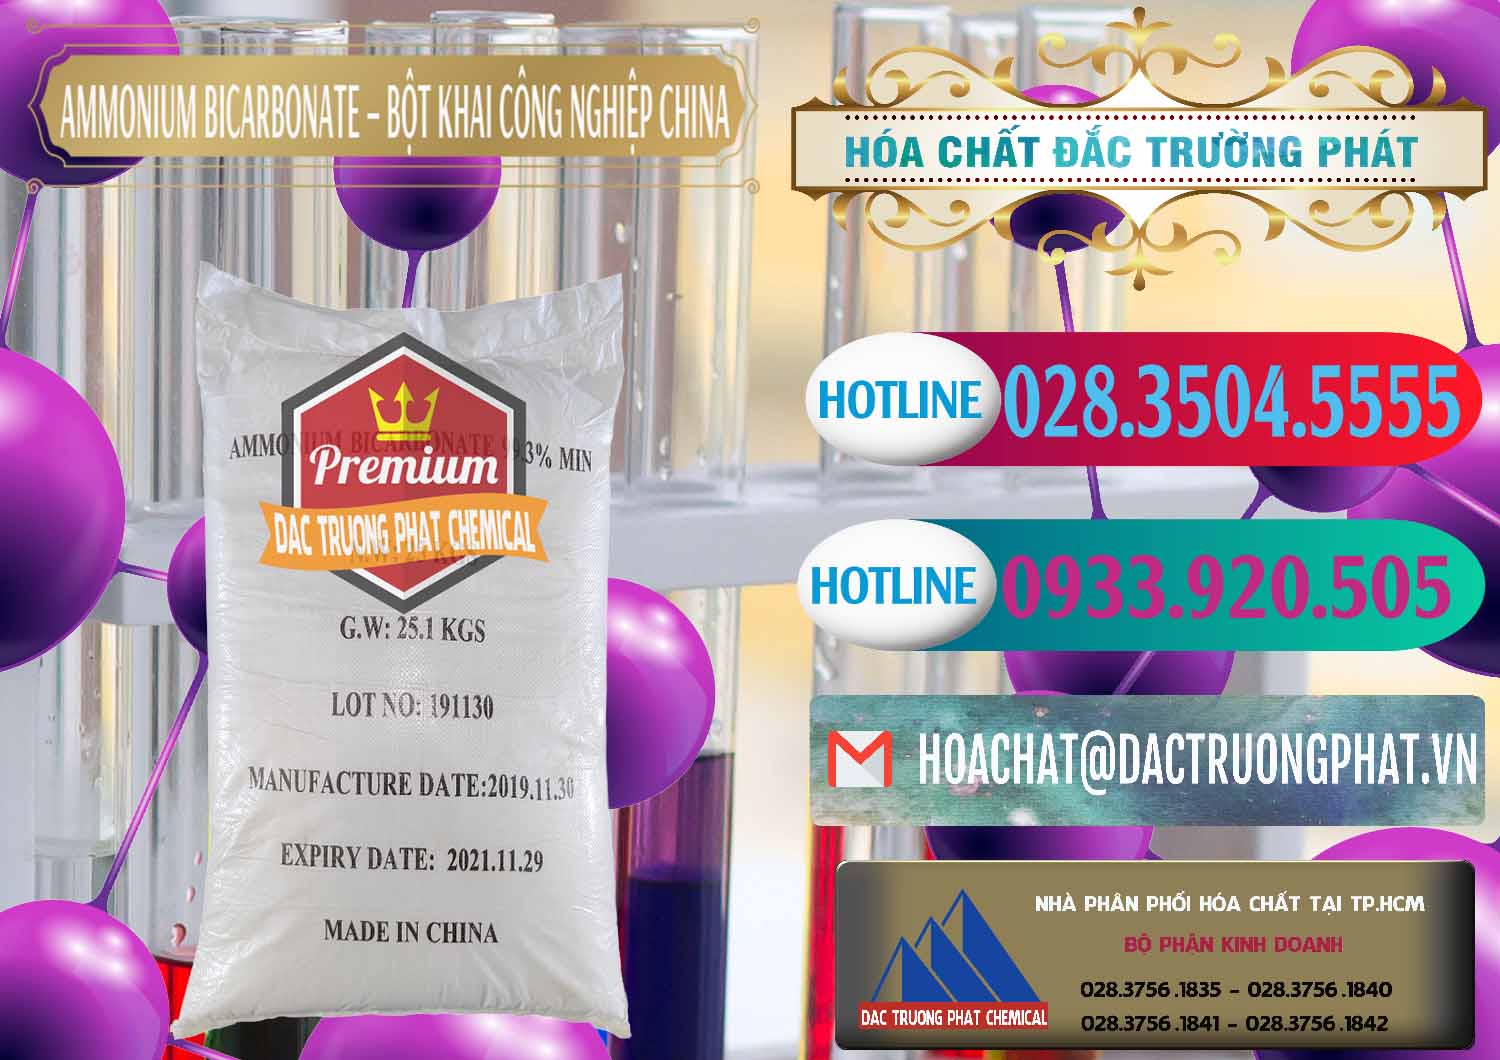 Cty cung cấp & bán Ammonium Bicarbonate – Bột Khai Công Nghiệp Trung Quốc China - 0020 - Công ty chuyên bán - phân phối hóa chất tại TP.HCM - truongphat.vn